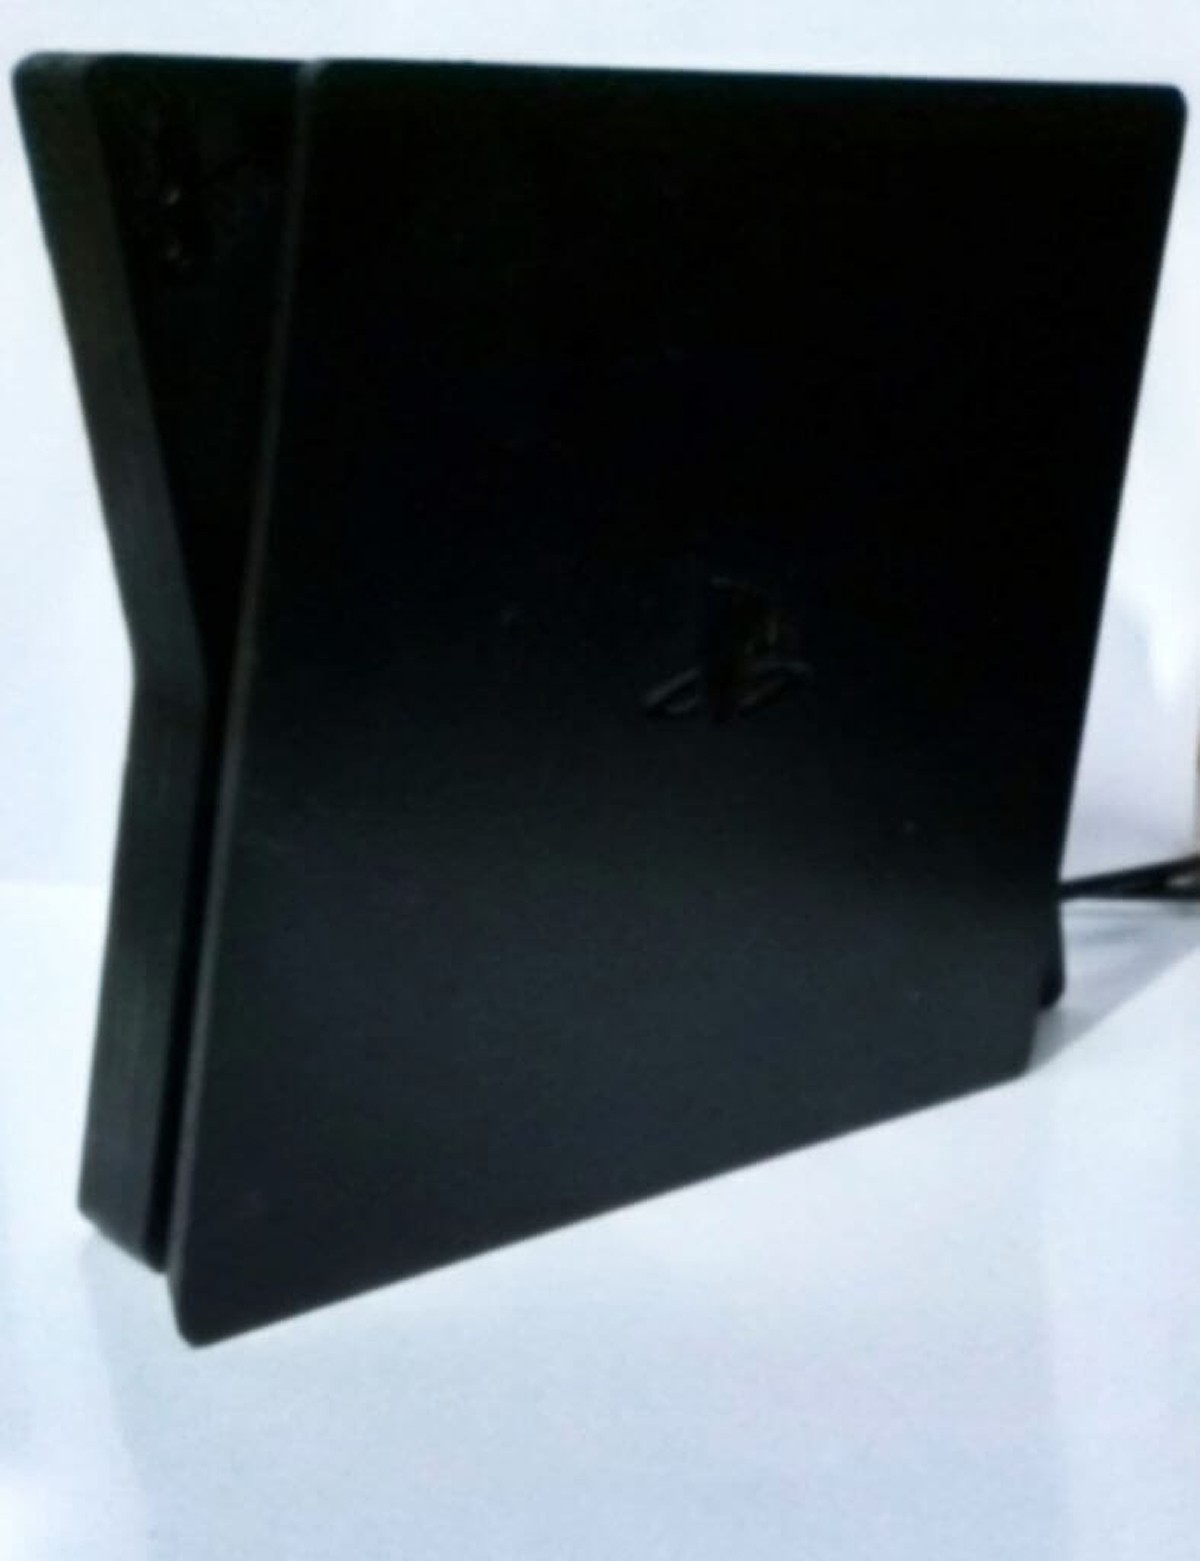 Voilà à quoi la future console de SONY, la Playstation 5 aurait pu ressembler